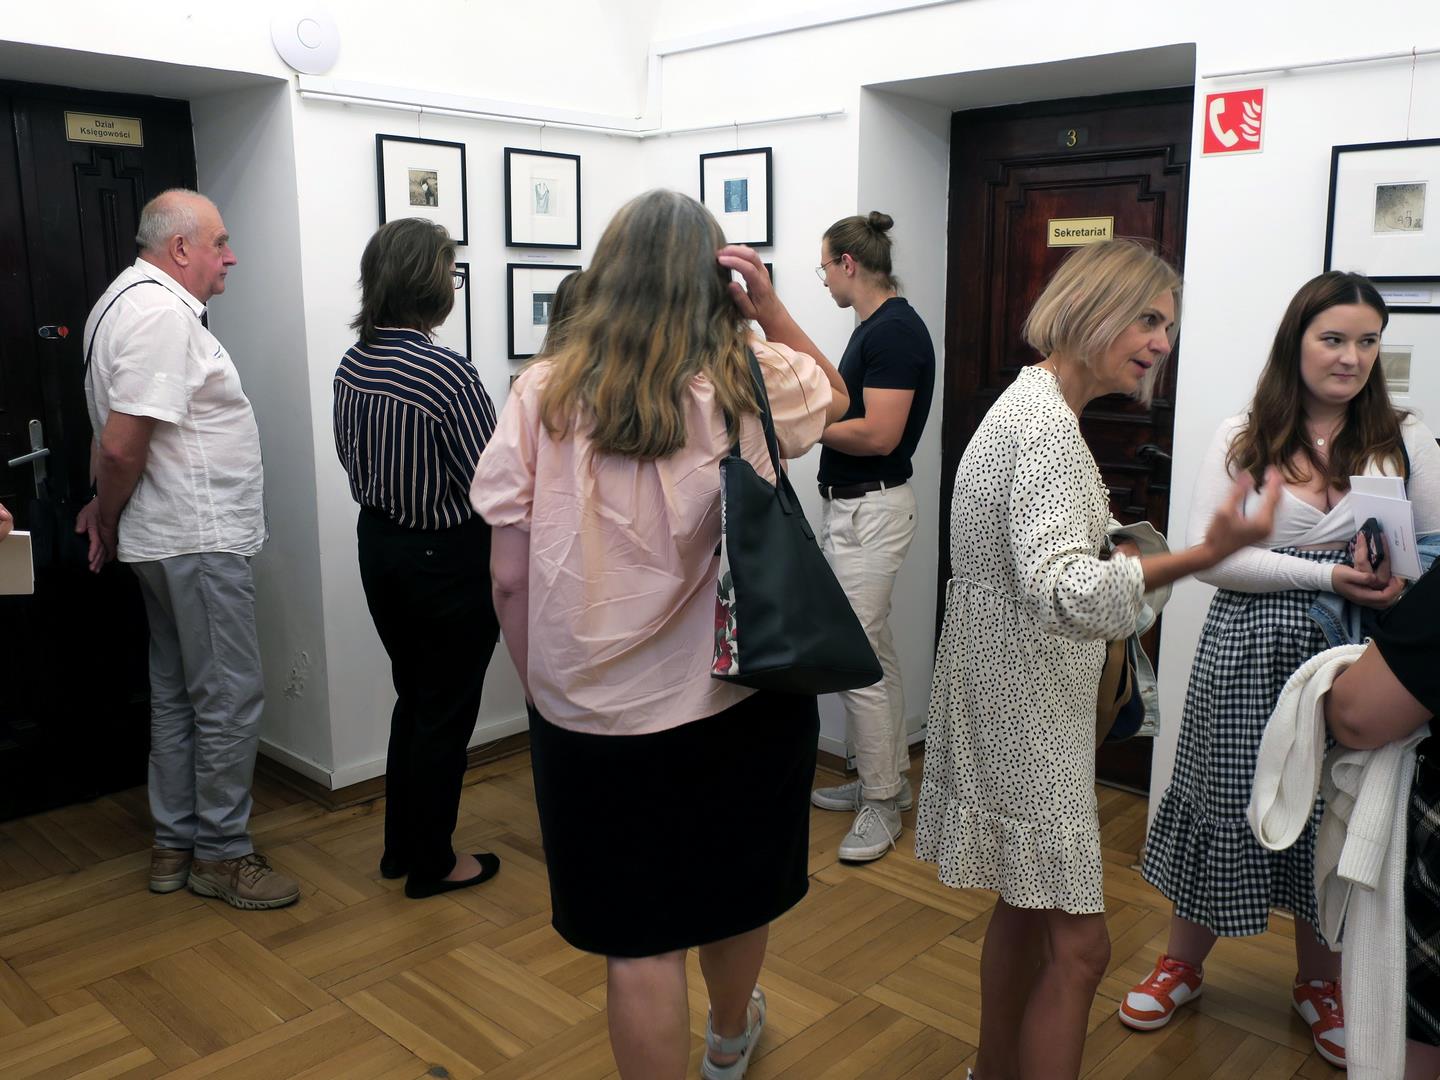 Goście zwiedzający salę ekspozycyjną z powieszonymi na ścianach pracami graficznymi.